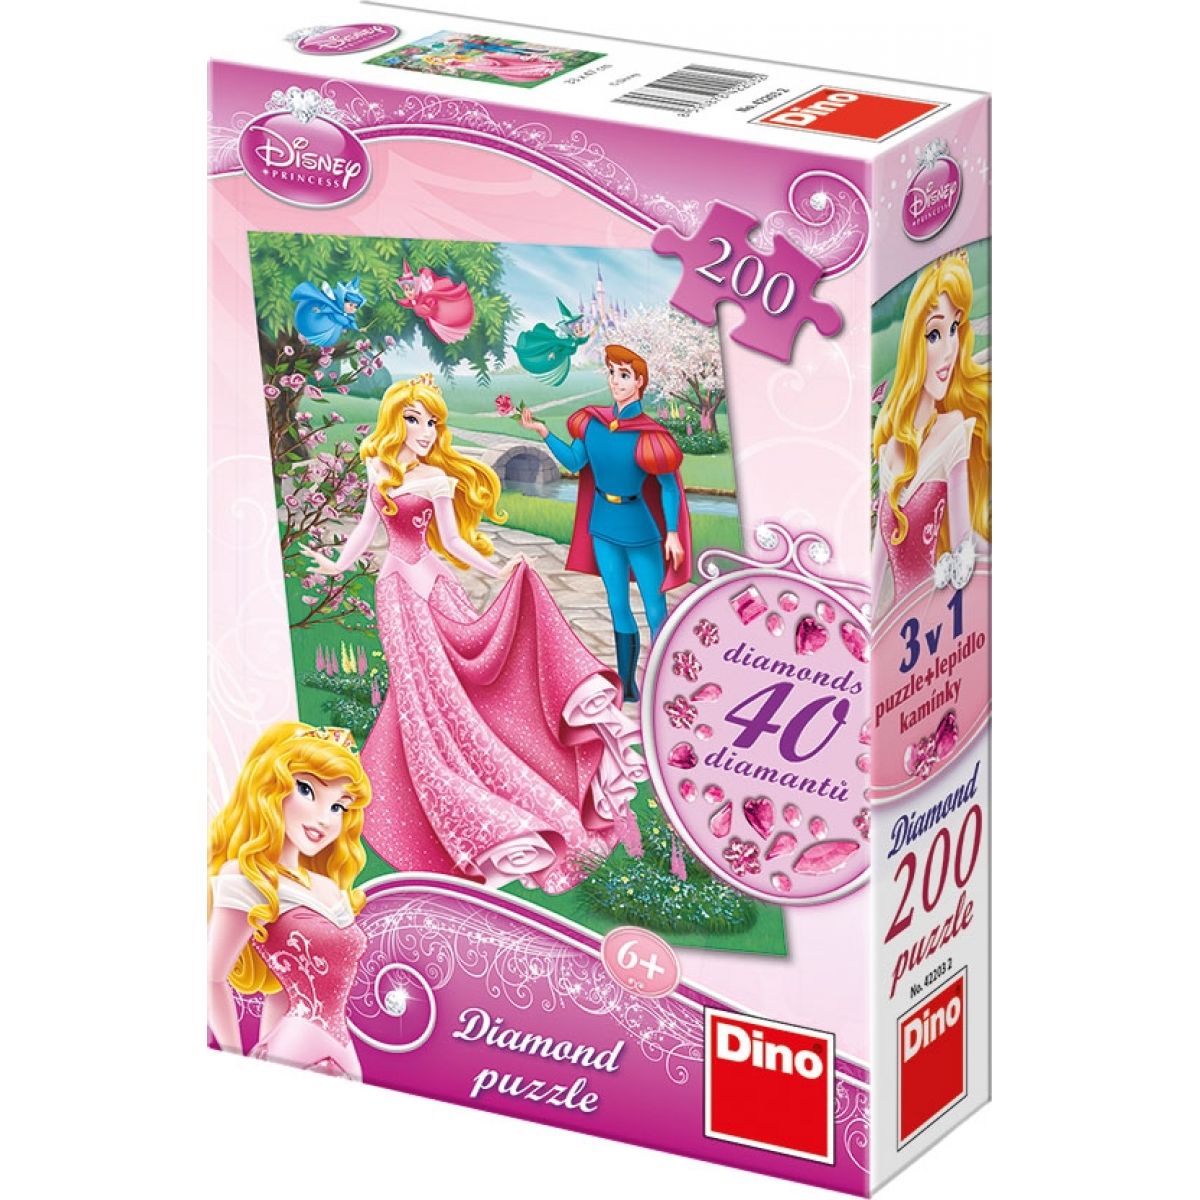 Dino Disney Princess Puzzle Diamond Růženka 200dílků